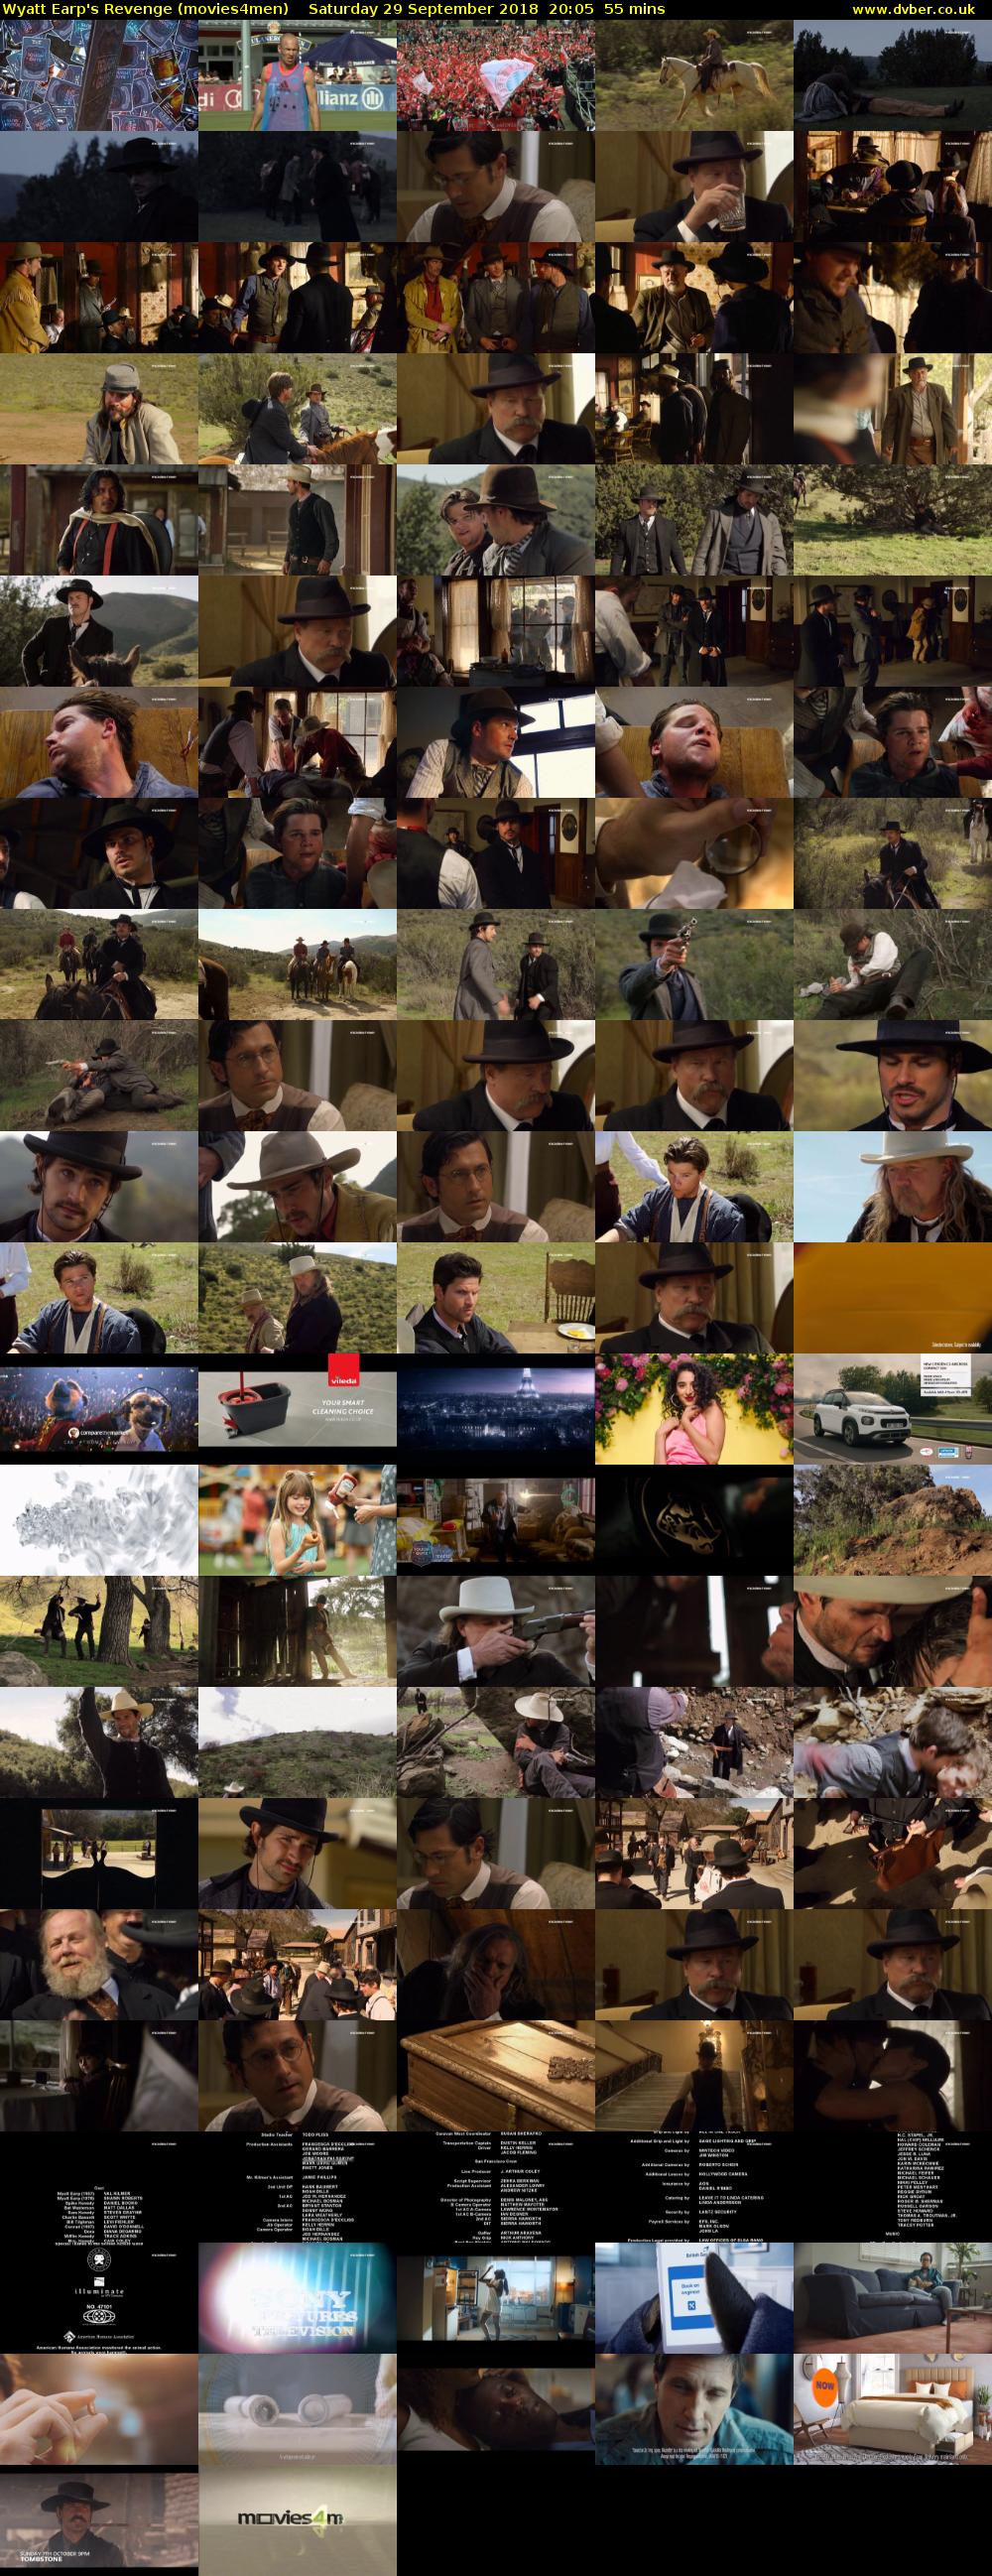 Wyatt Earp's Revenge (movies4men) Saturday 29 September 2018 20:05 - 21:00